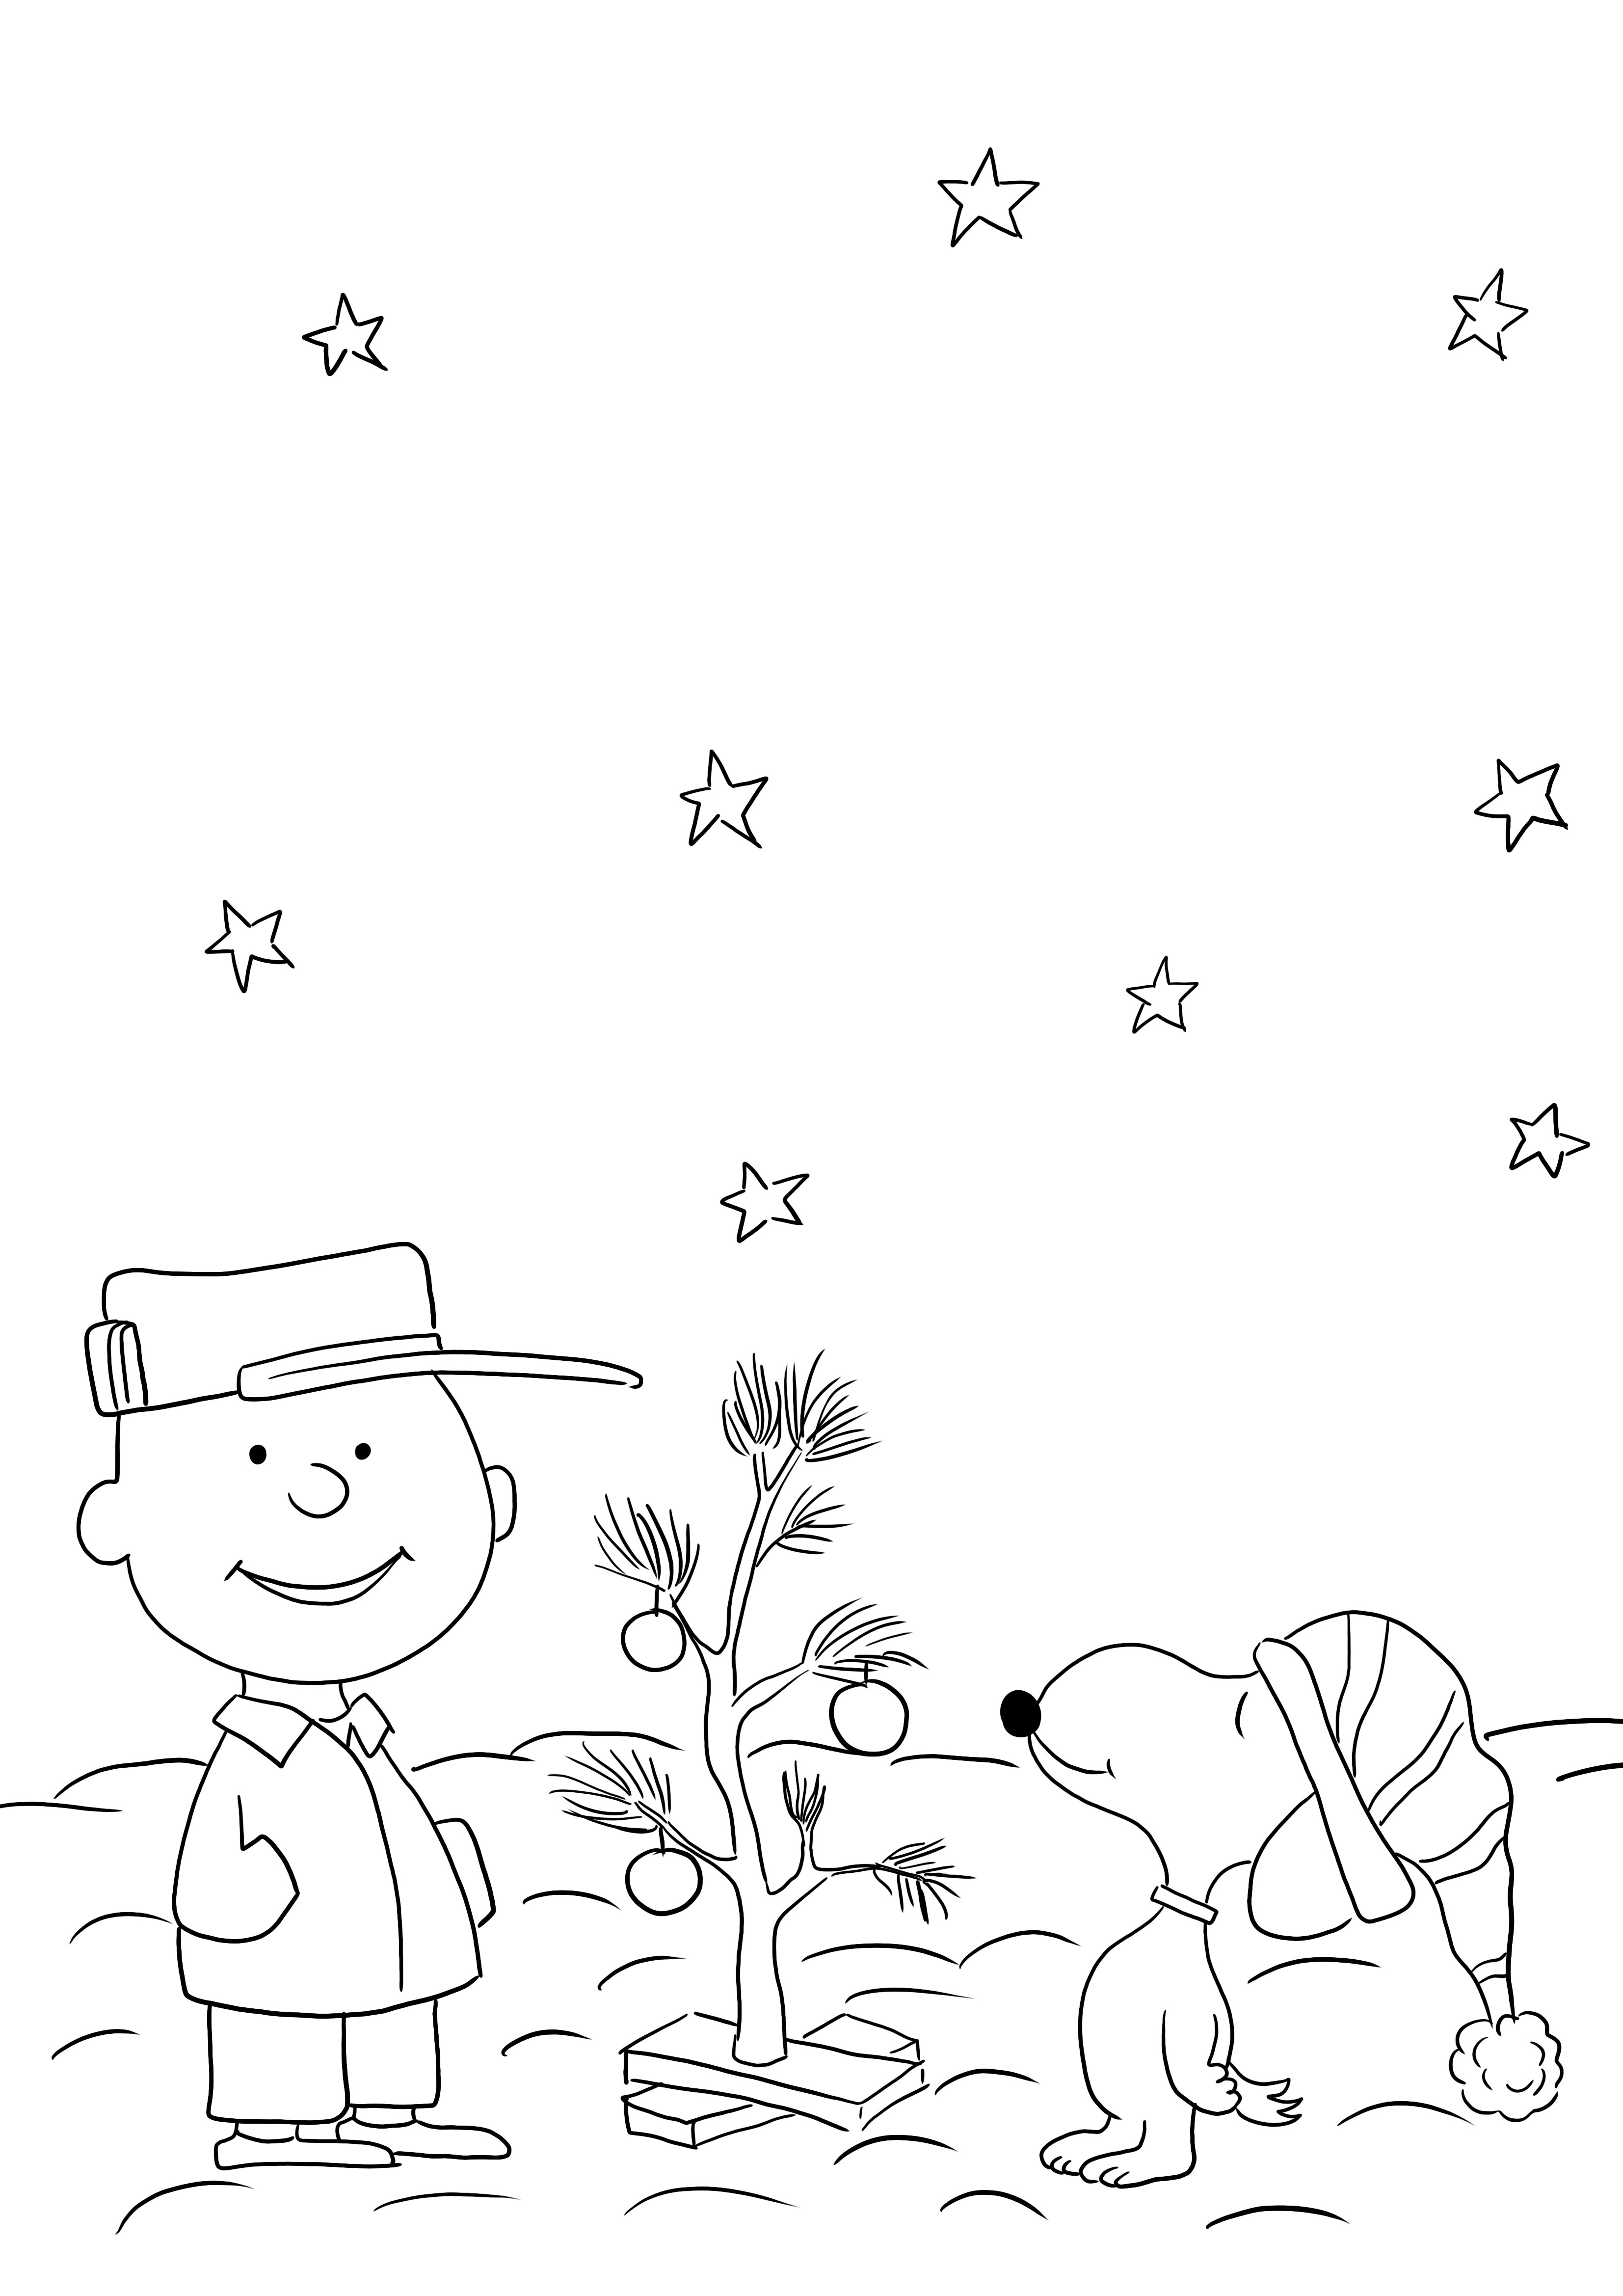 Charlie Brown menikmati lembar mewarnai yang dapat dicetak tanpa pohon Natal untuk anak-anak